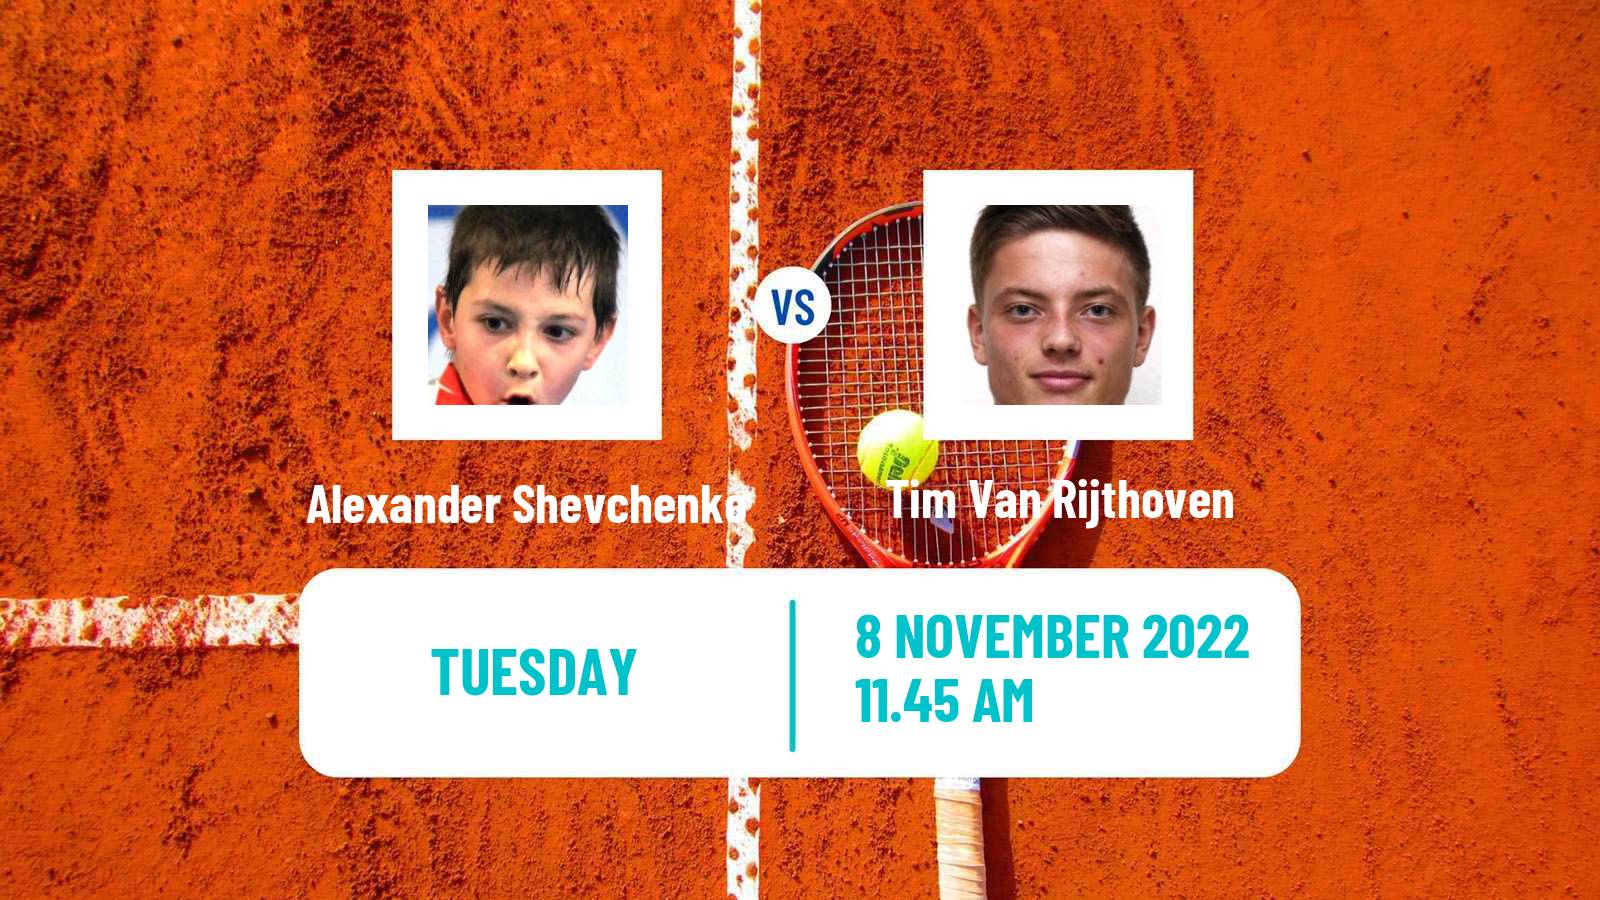 Tennis ATP Challenger Alexander Shevchenko - Tim Van Rijthoven